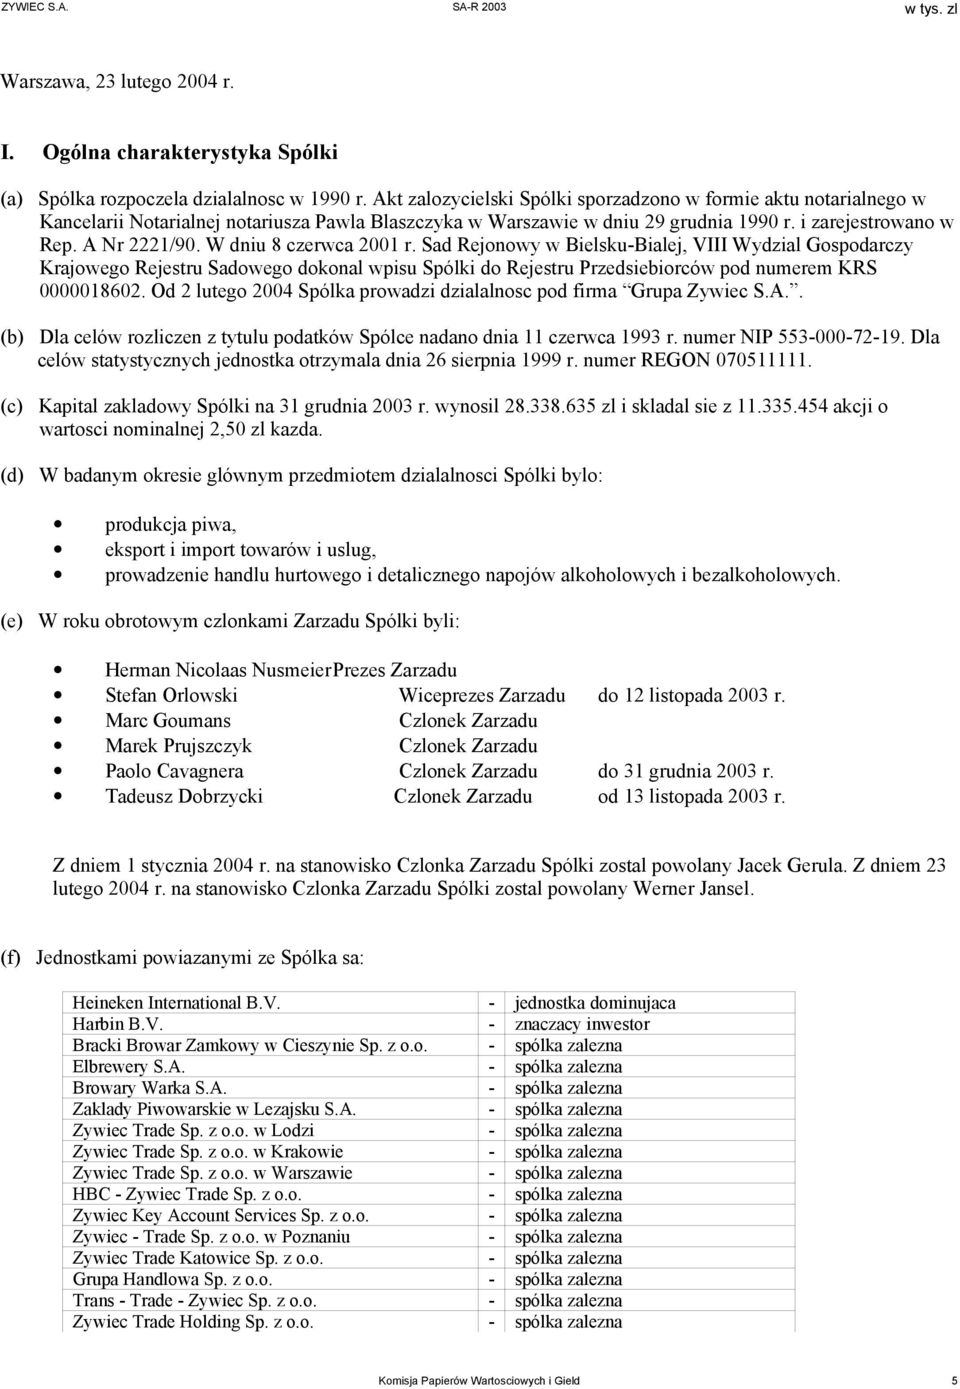 W dniu 8 czerwca 2001 r. Sad Rejonowy w Bielsku-Bialej, VIII Wydzial Gospodarczy Krajowego Rejestru Sadowego dokonal wpisu Spólki do Rejestru Przedsiebiorców pod numerem KRS 0000018602.